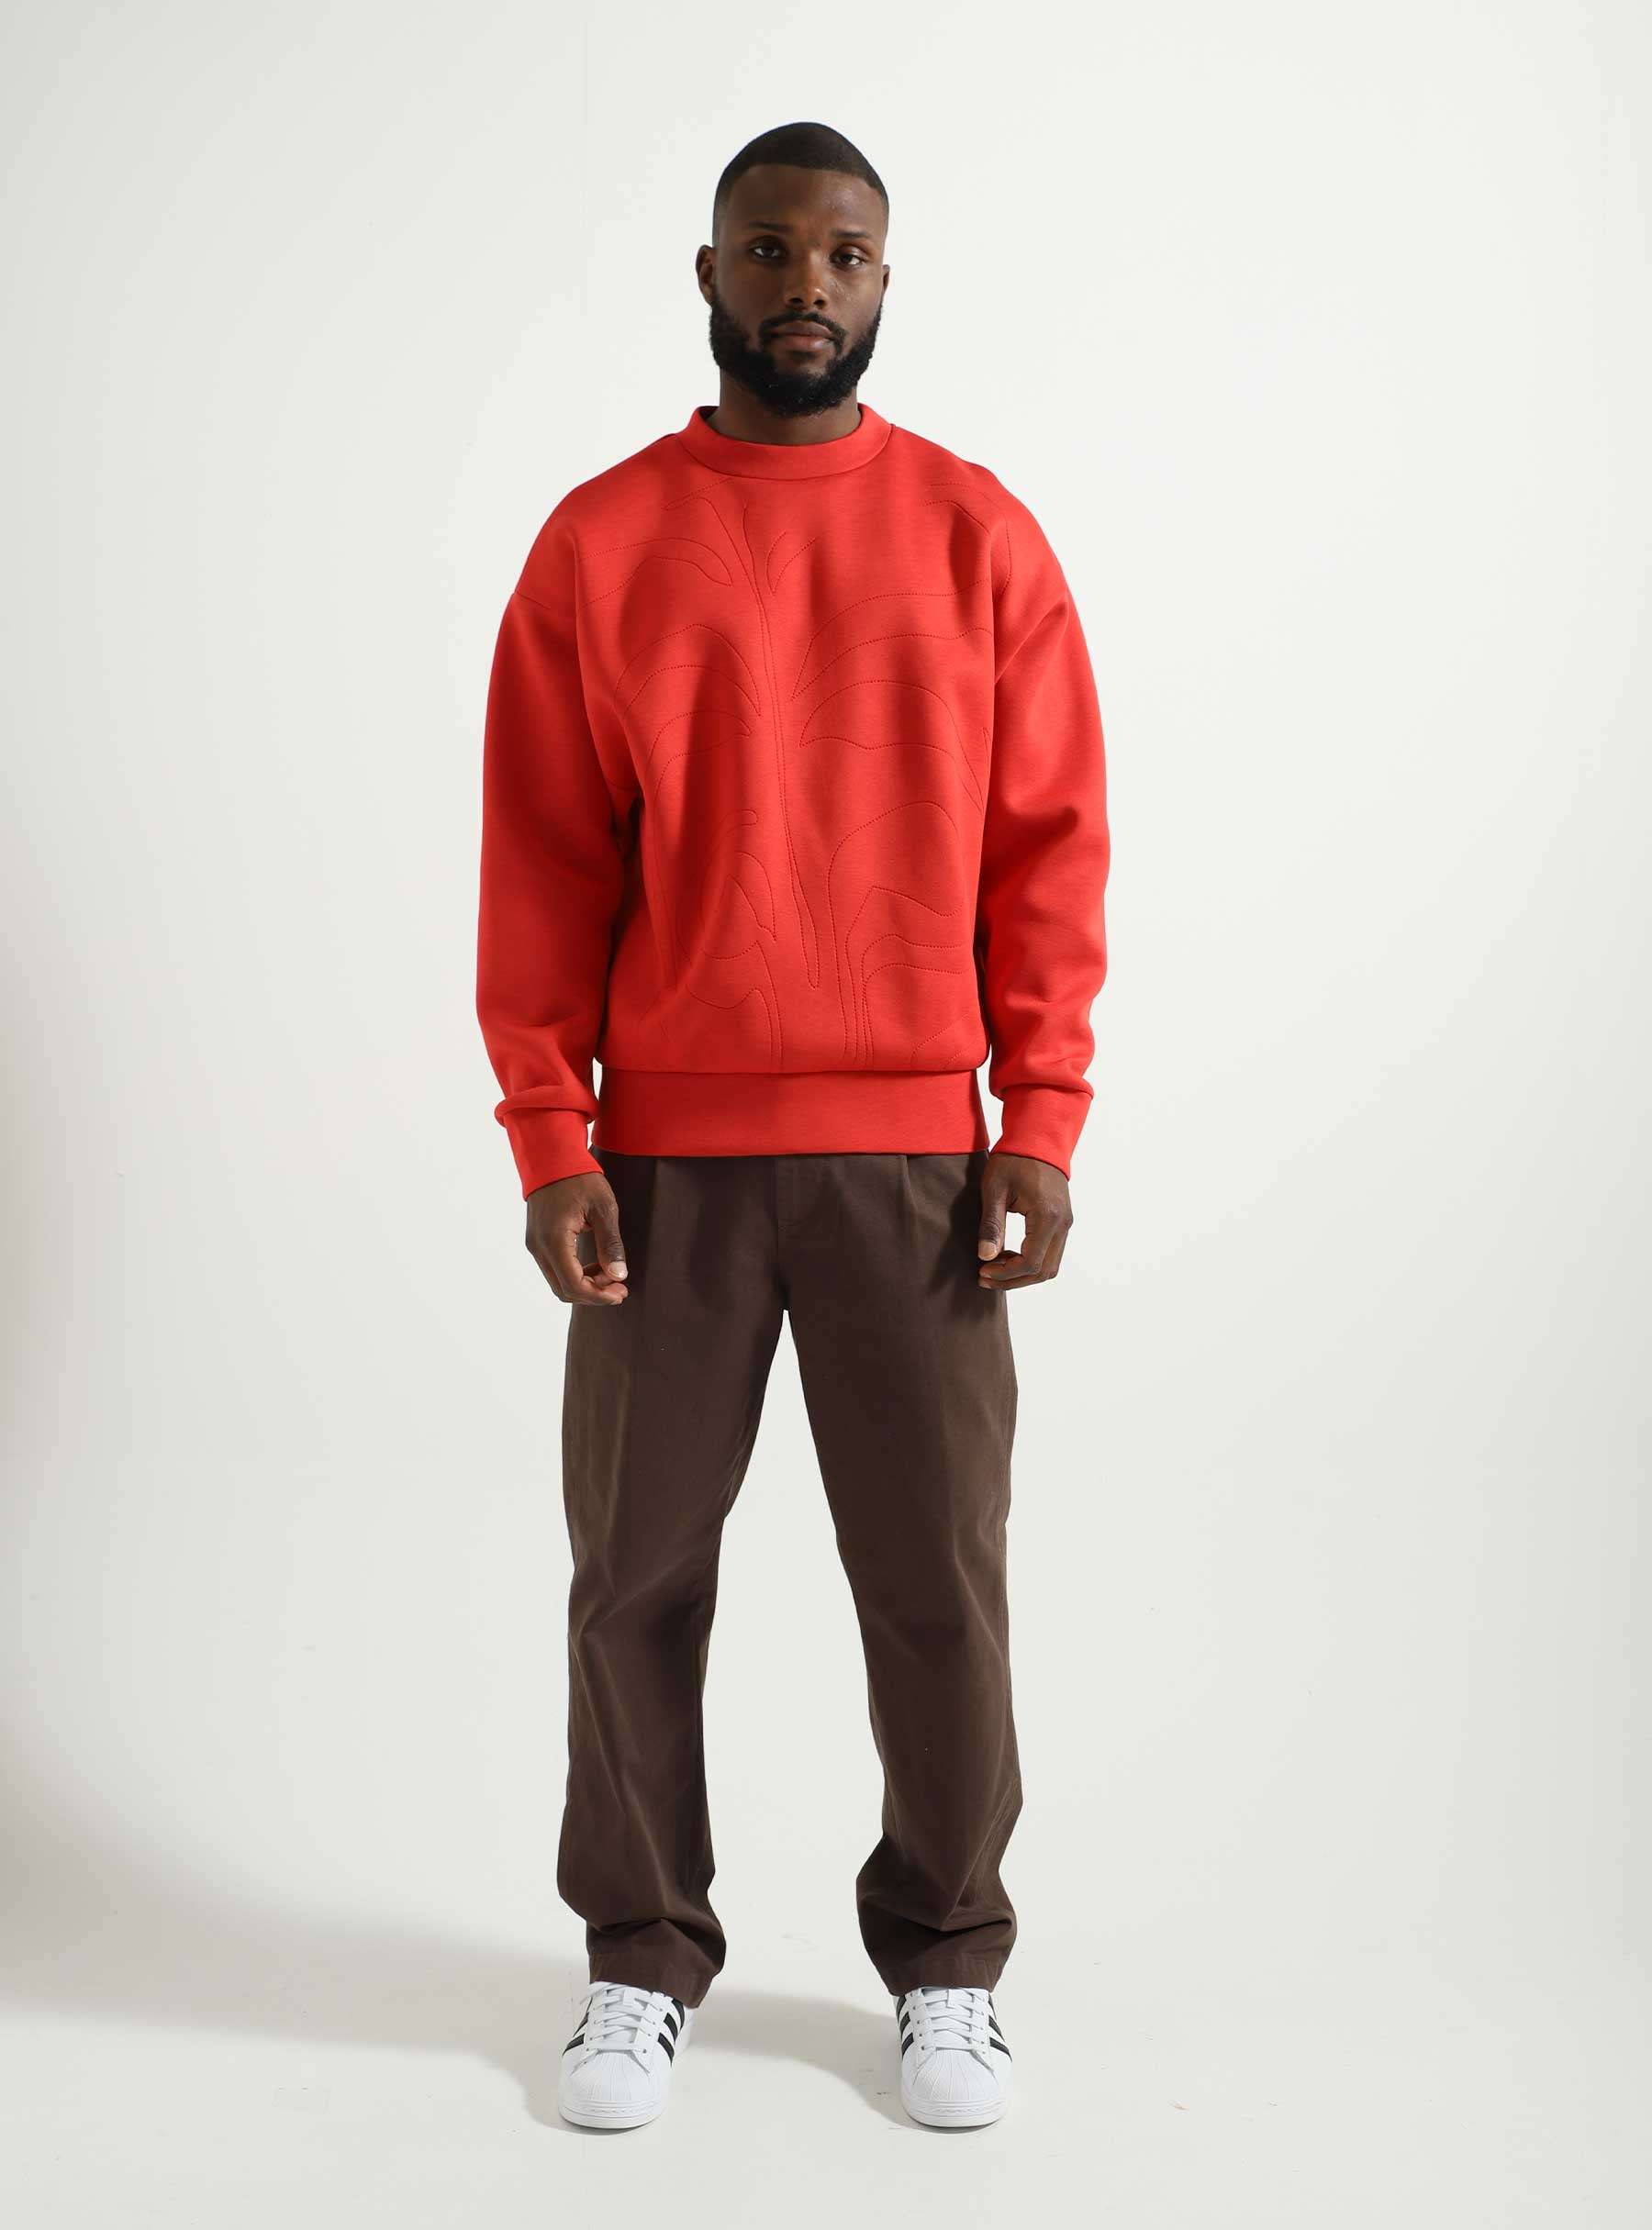 Vincent De Boer Neoprene Sweater Red POFW23004